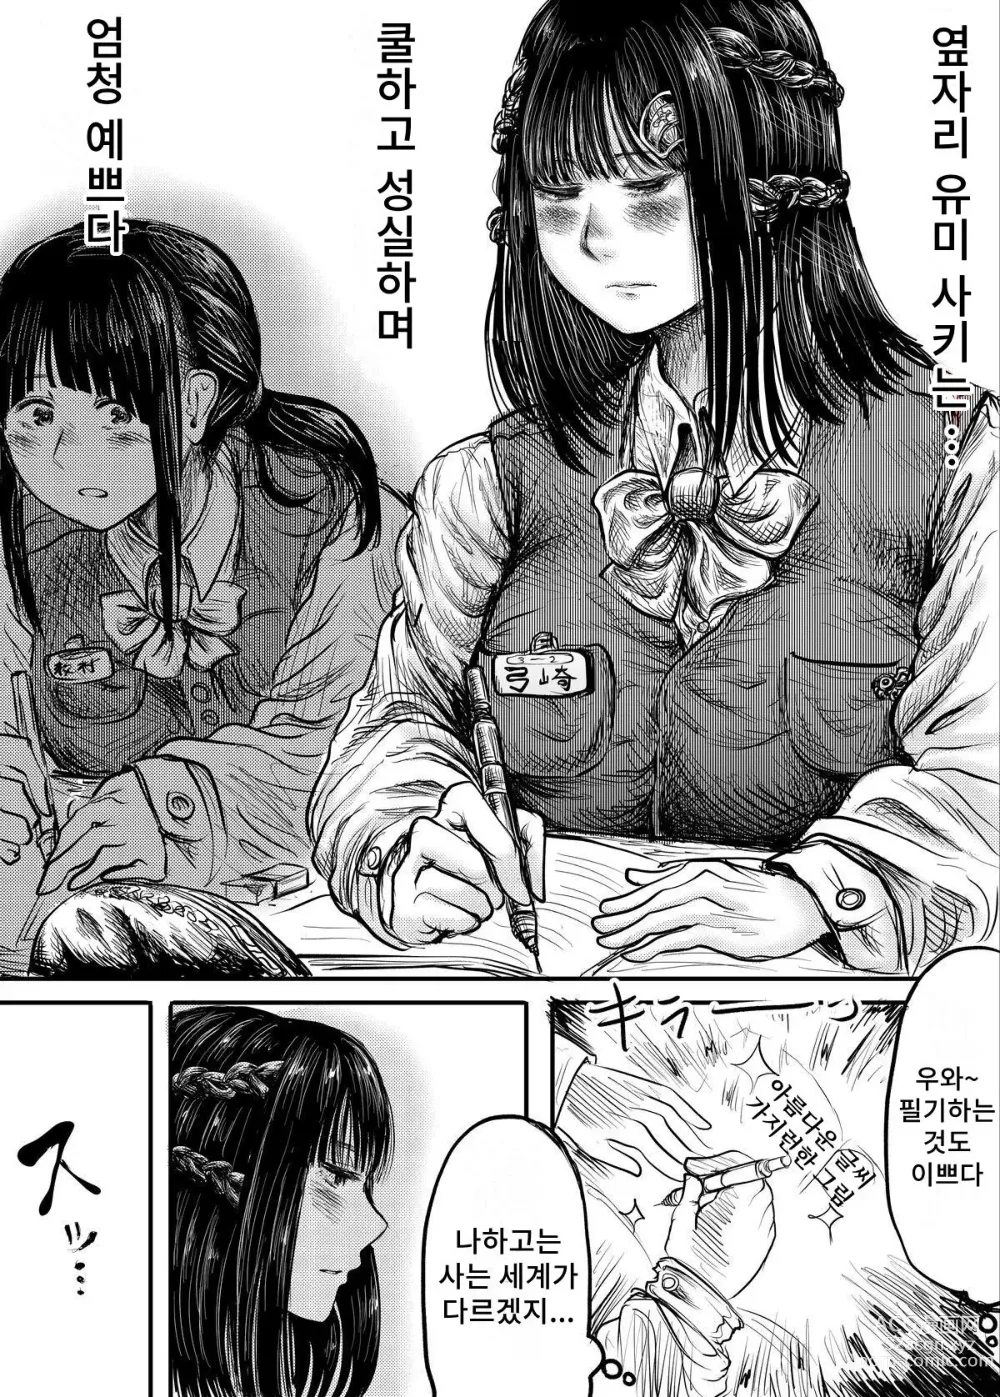 Page 1 of doujinshi Tonari no Seki no Ko ni Haisetsu Sugata o Misetsukerareru Manga